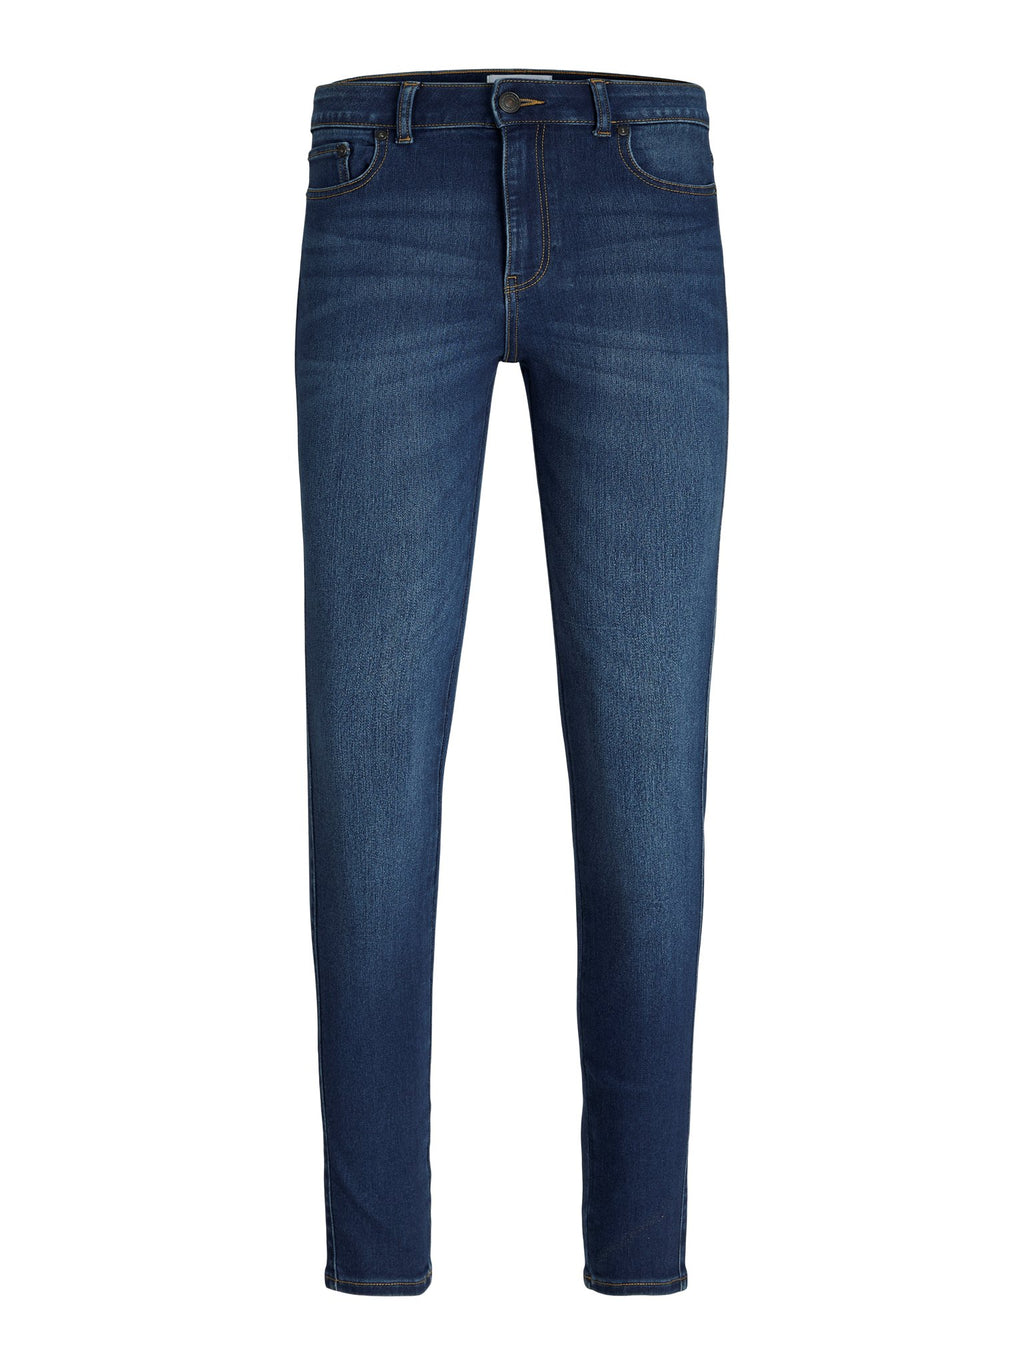 El rendimiento original de los jeans delgados - mezclilla de azul mediano